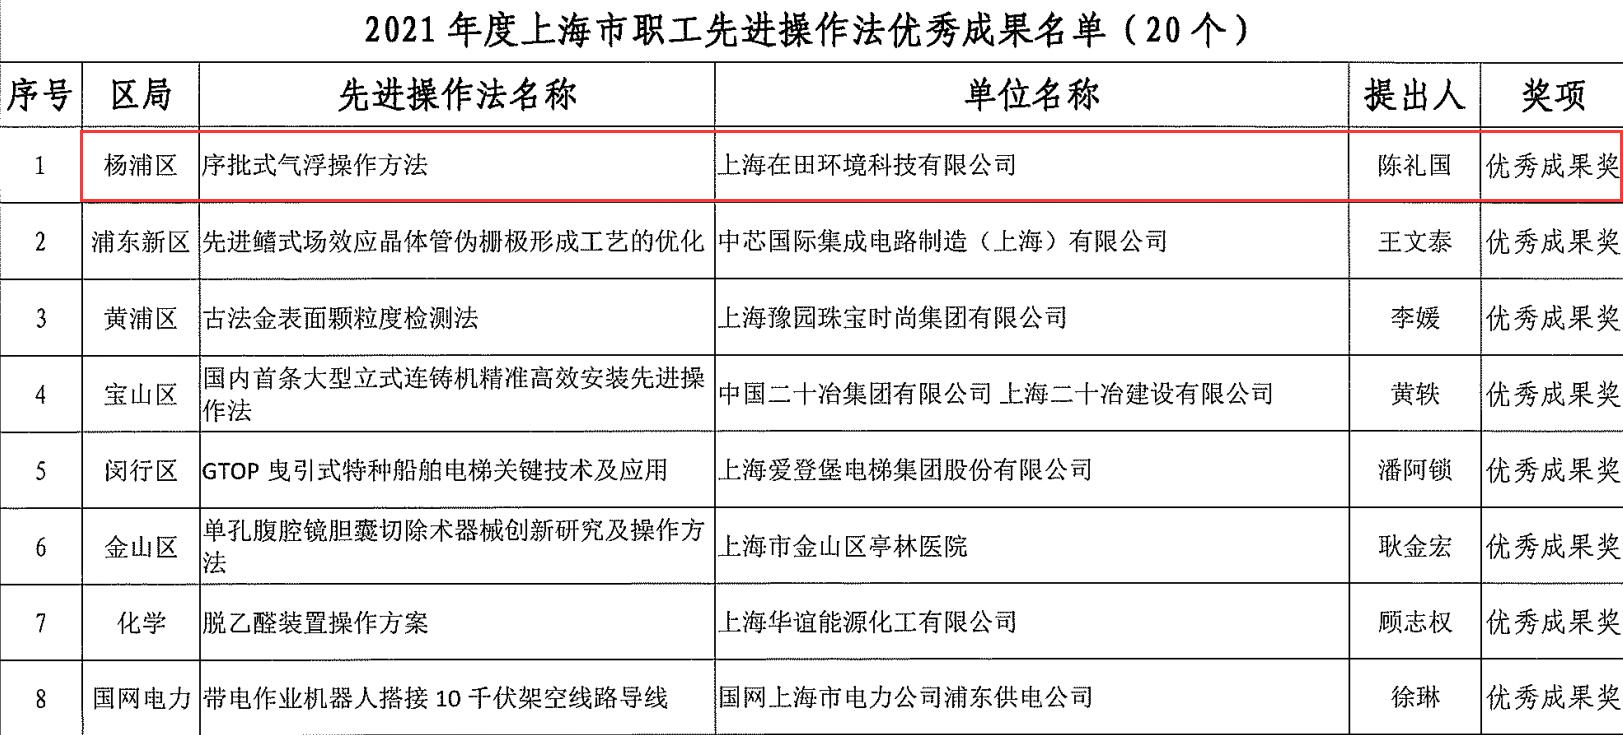 2021年度上海市先进操作法.jpg